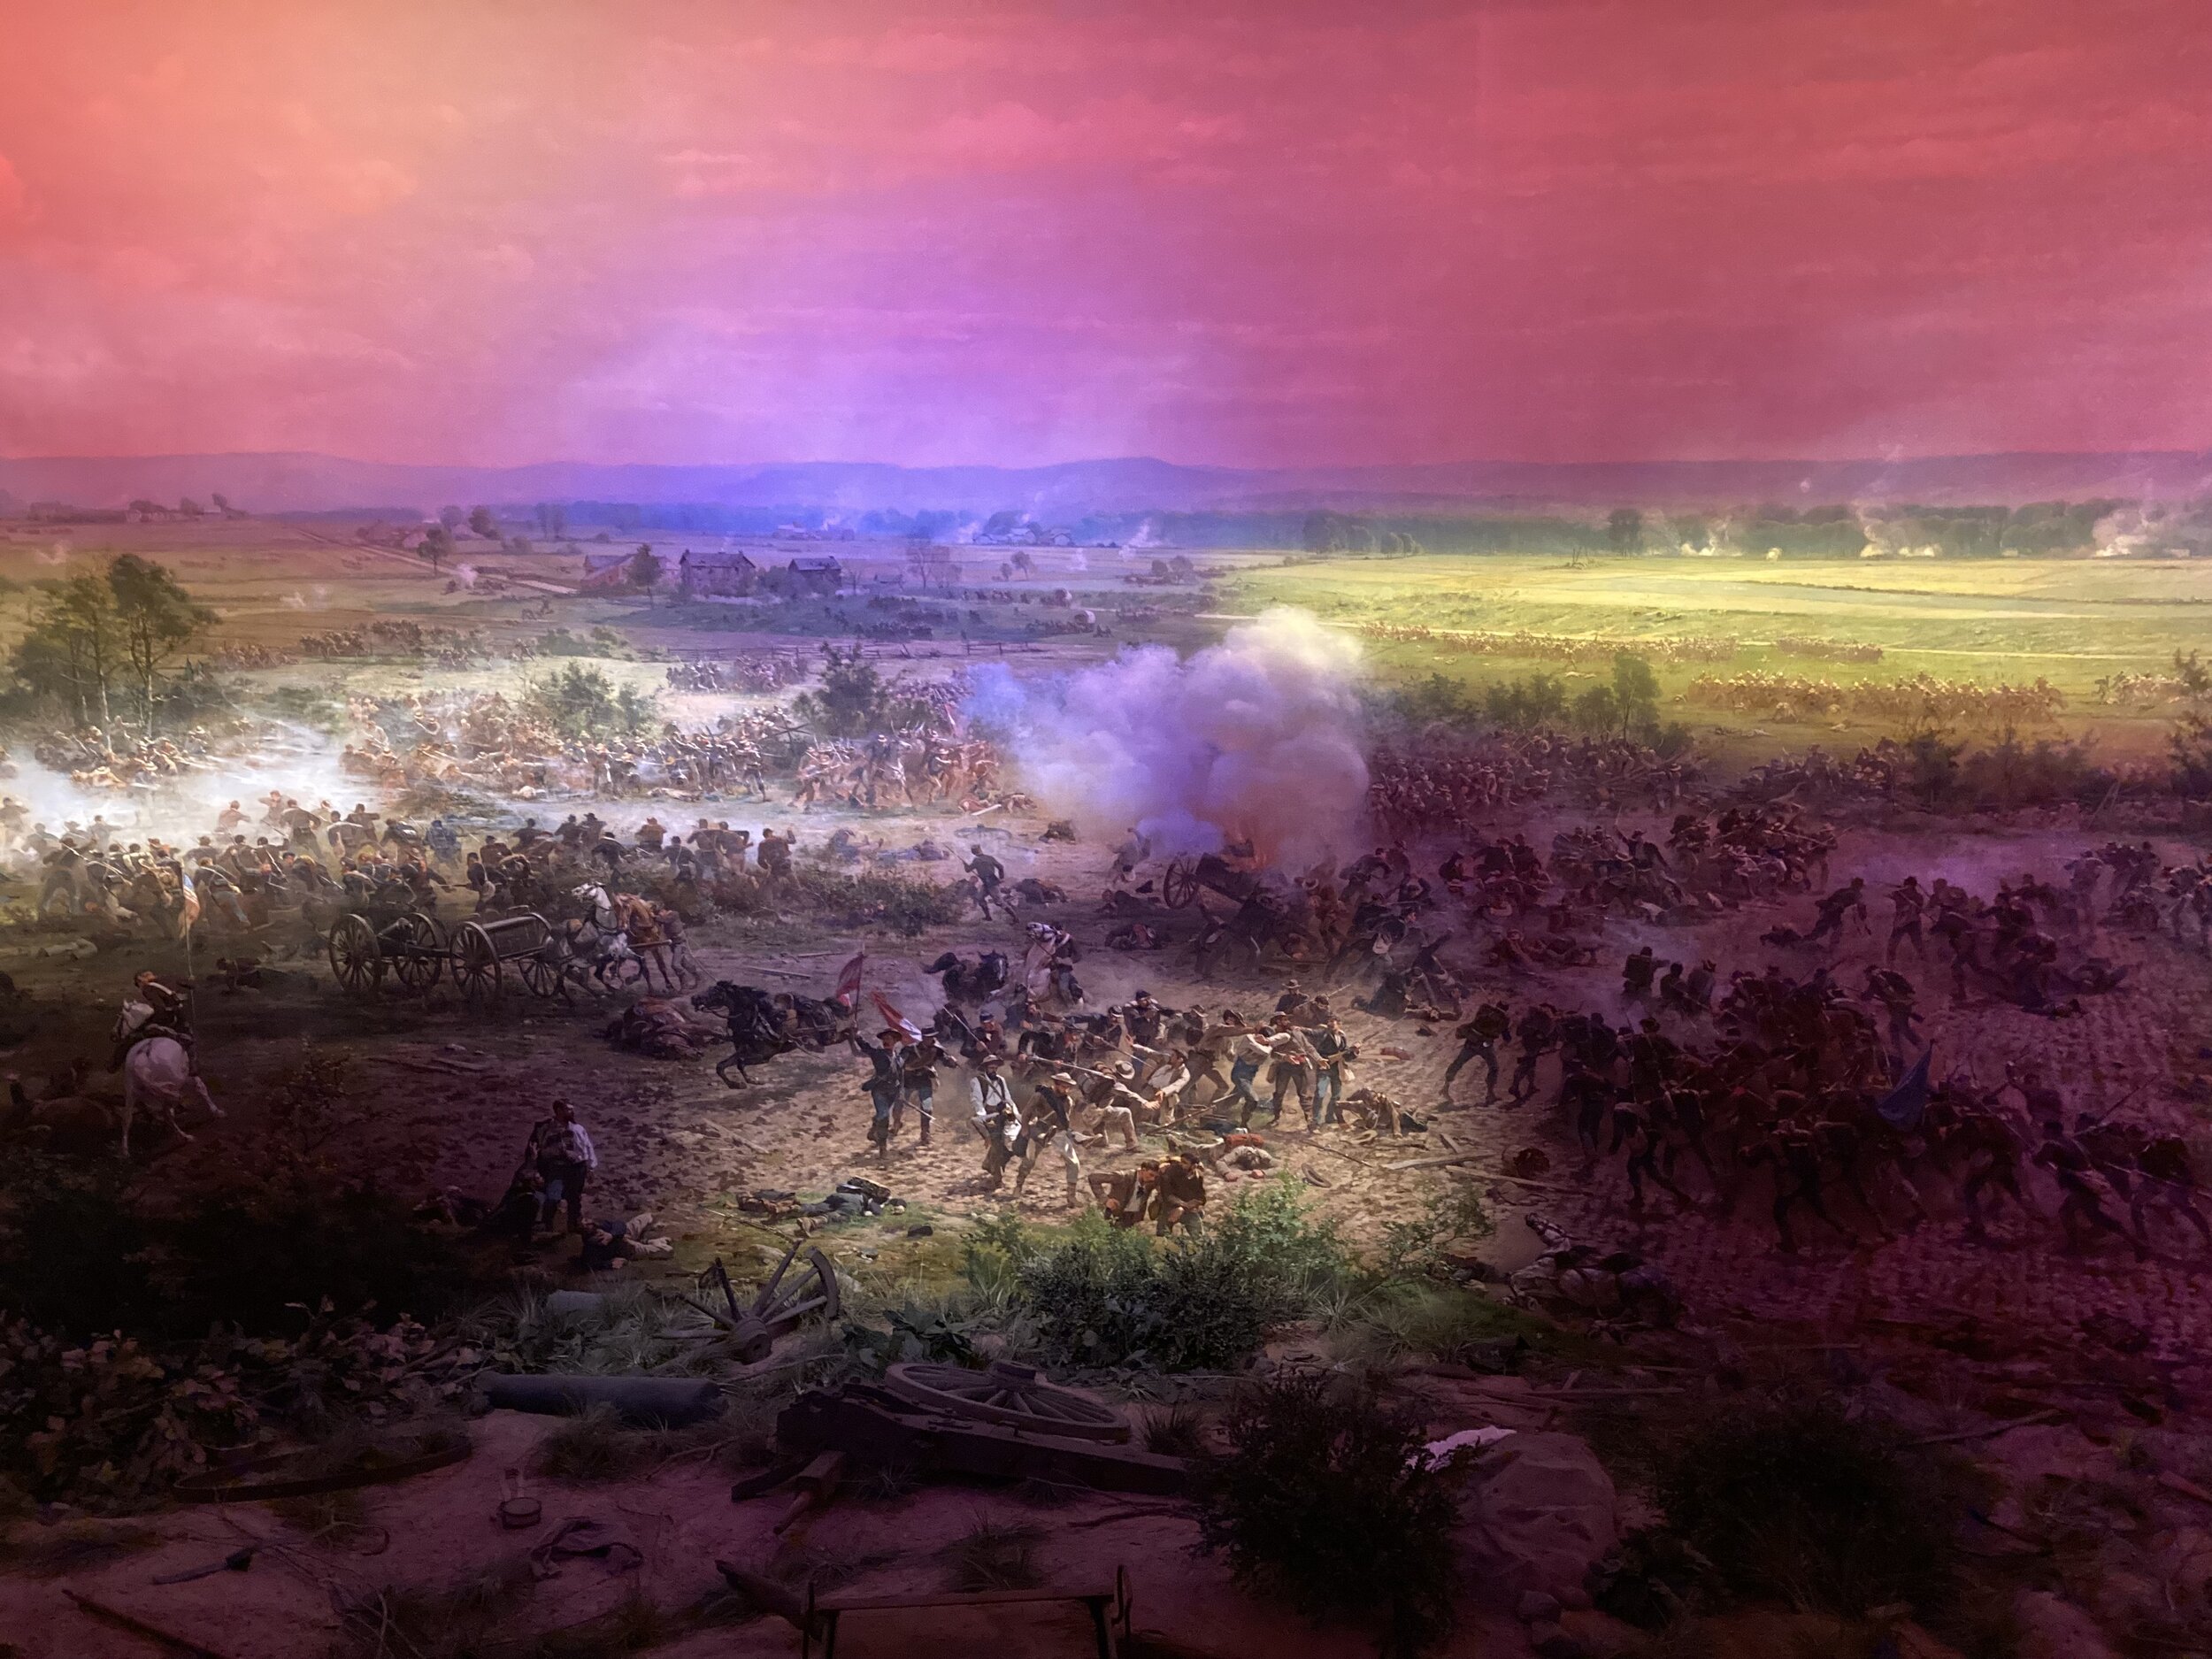 Gettysburg Cyclorama image